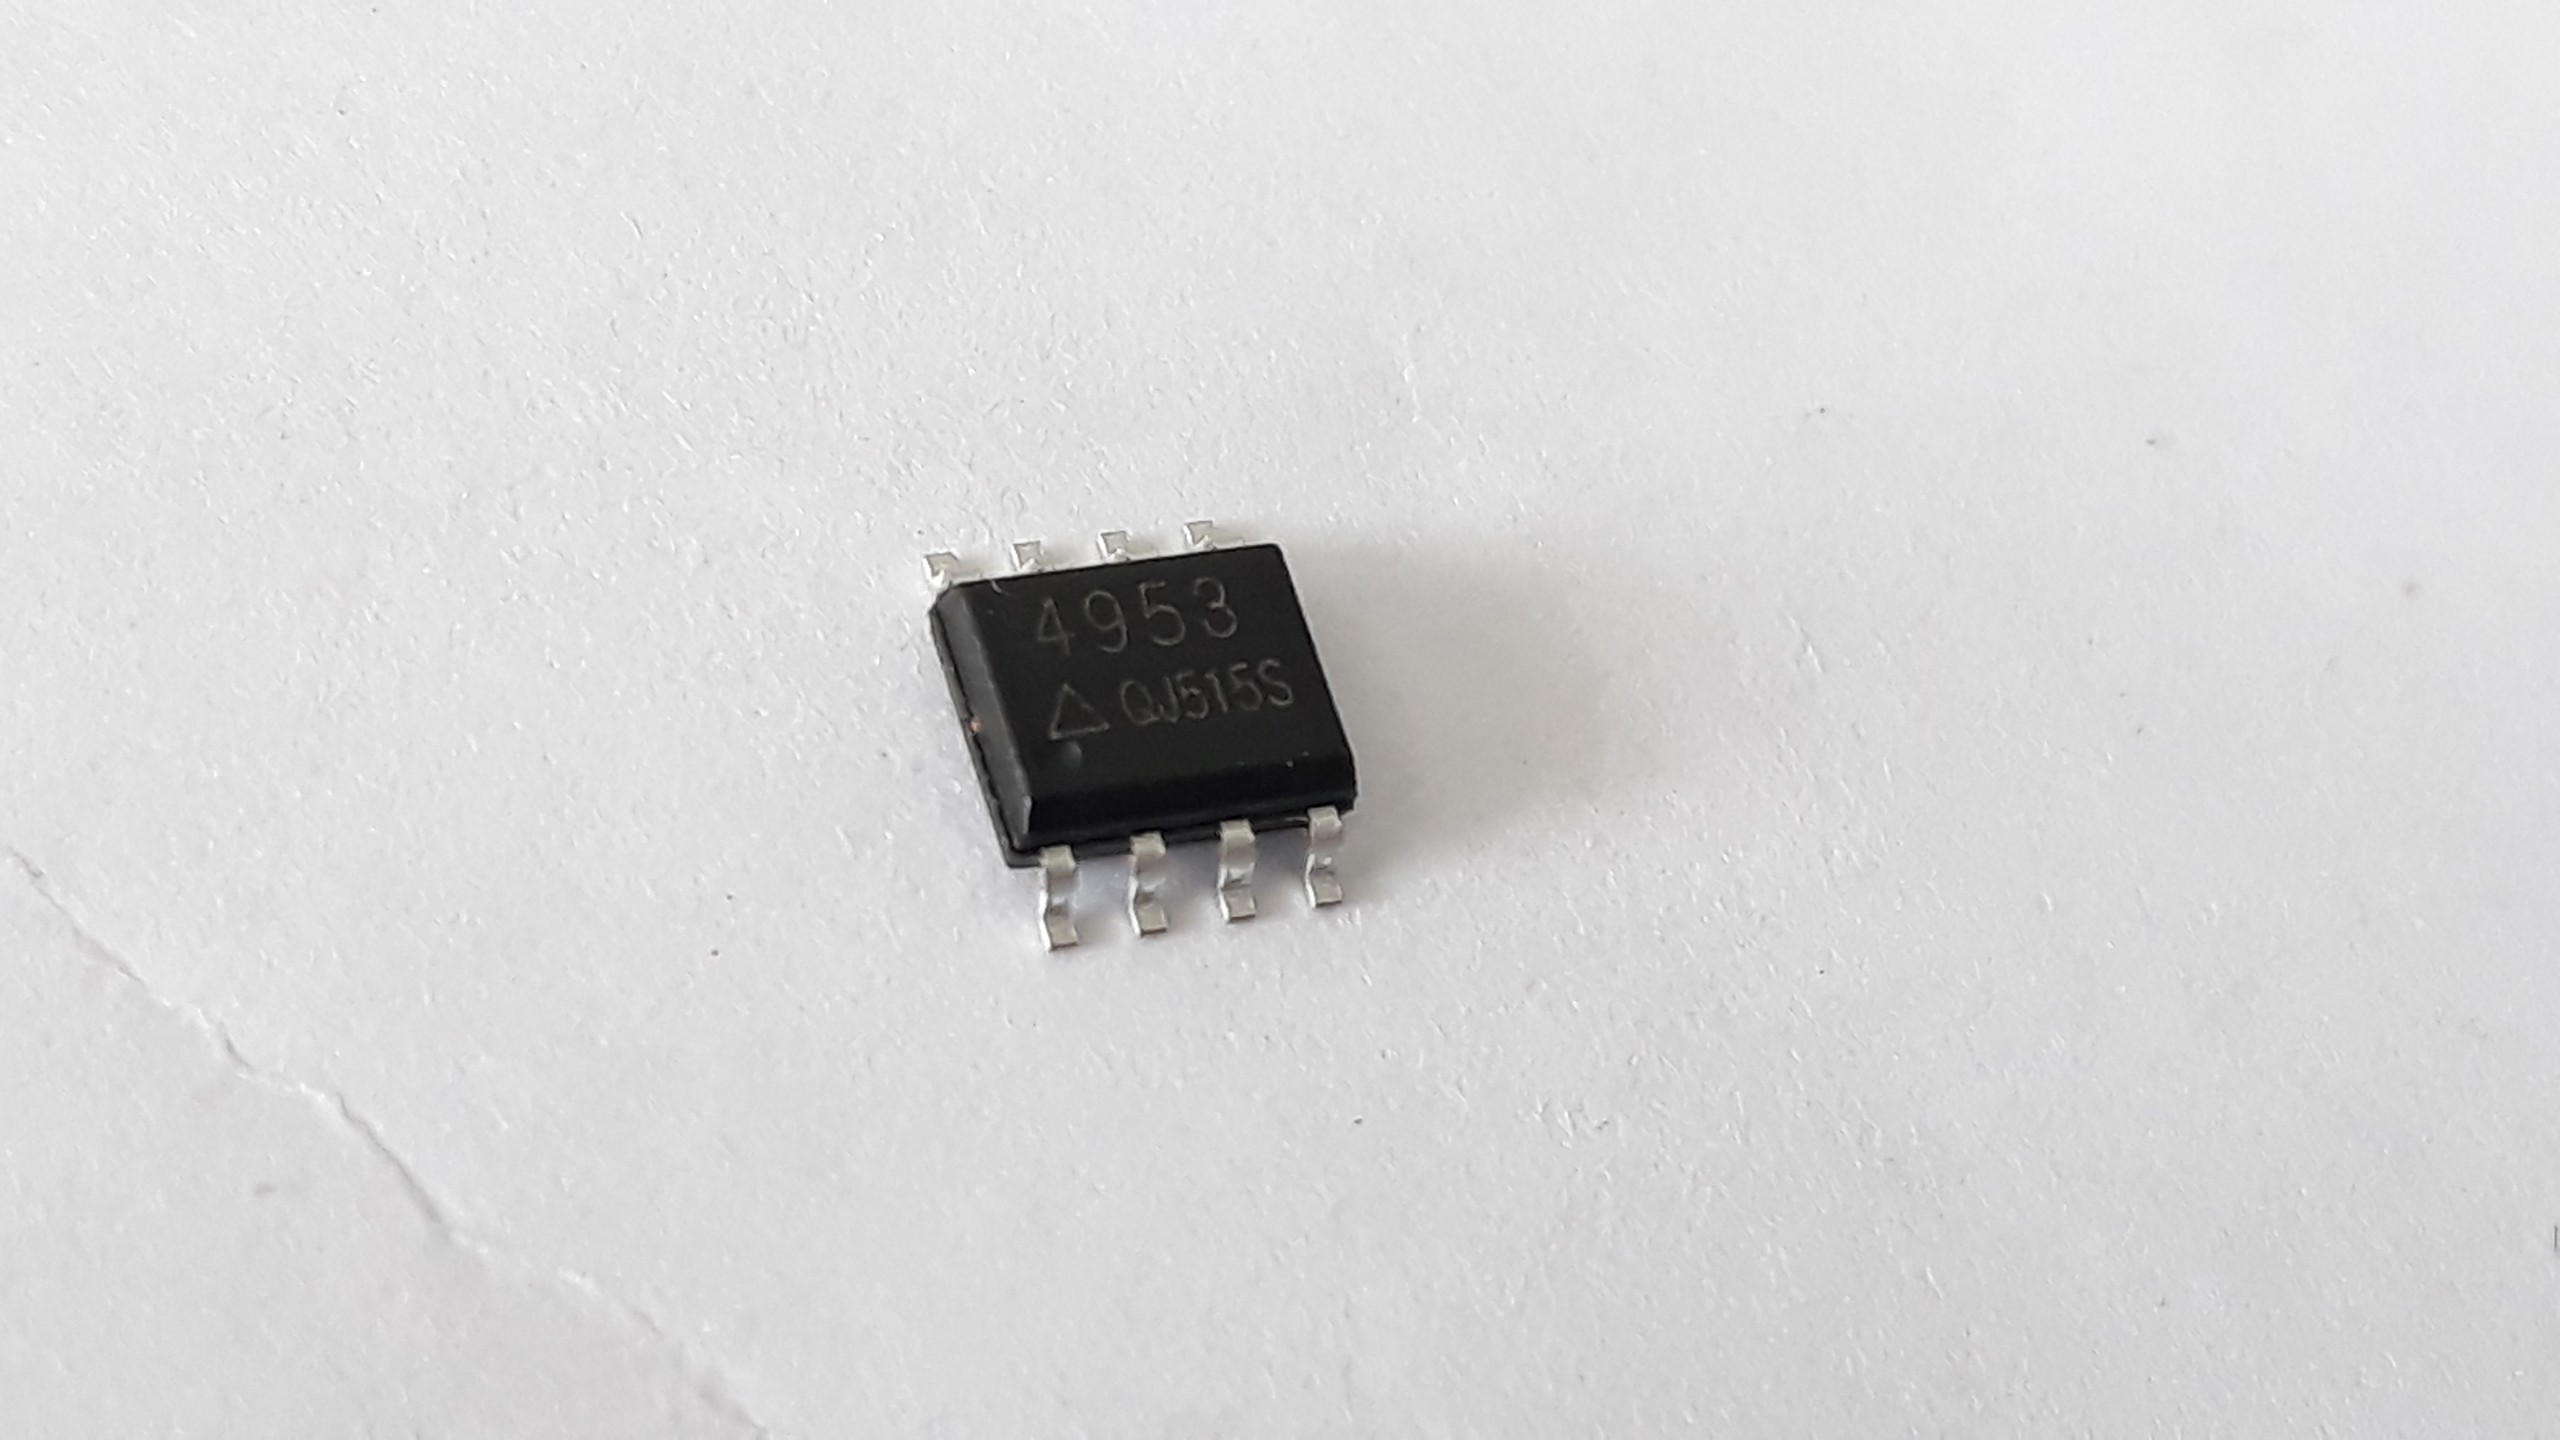 [HCM]Linh kiện sửa chữa màn hình led: IC 4953 quét ngang cho module led( combo 10 ic)